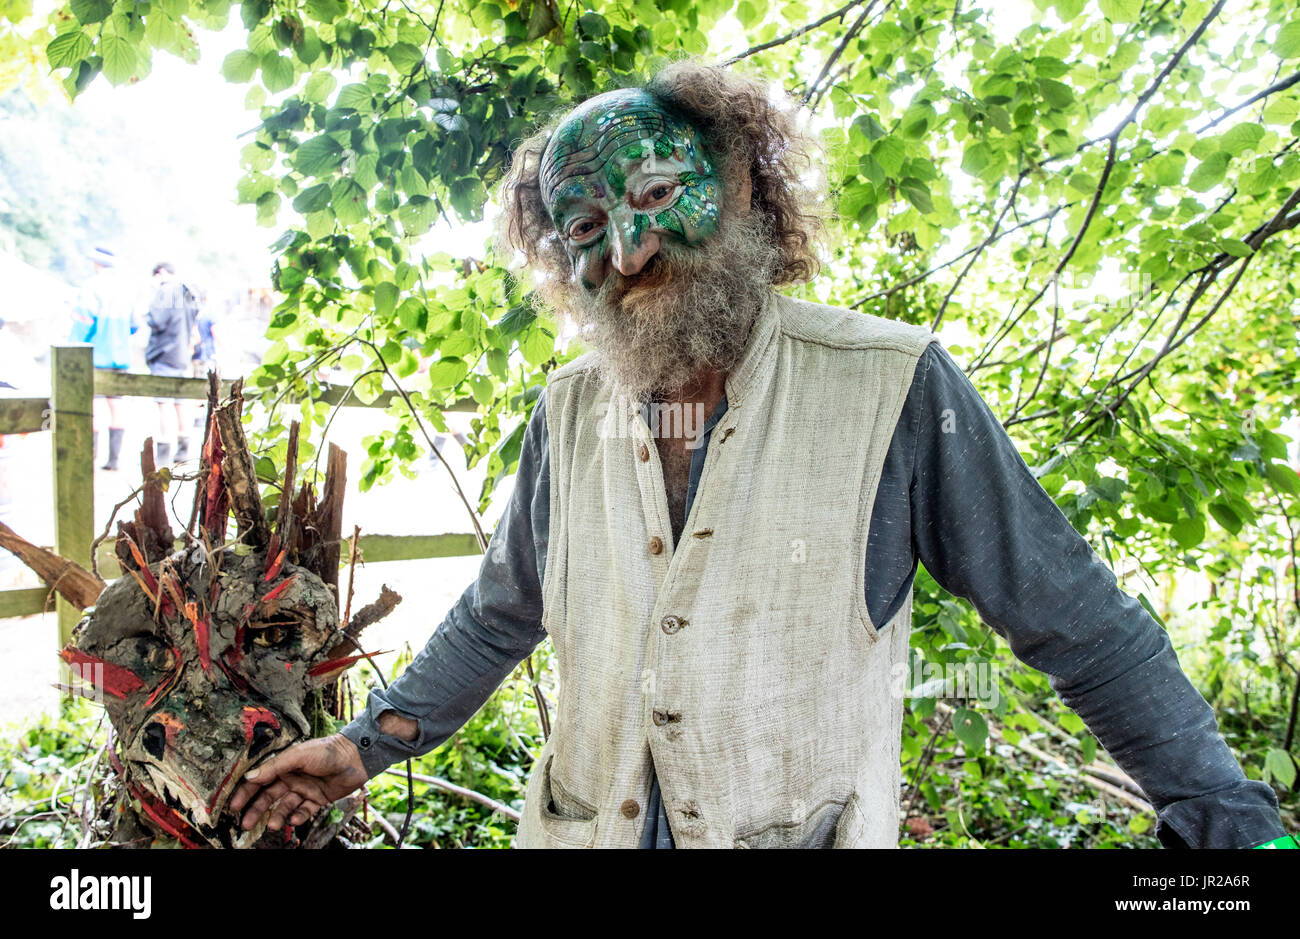 Alter Hippie mit bemaltem Gesicht und Bart Glastonbury Festival in Großbritannien Stockfoto